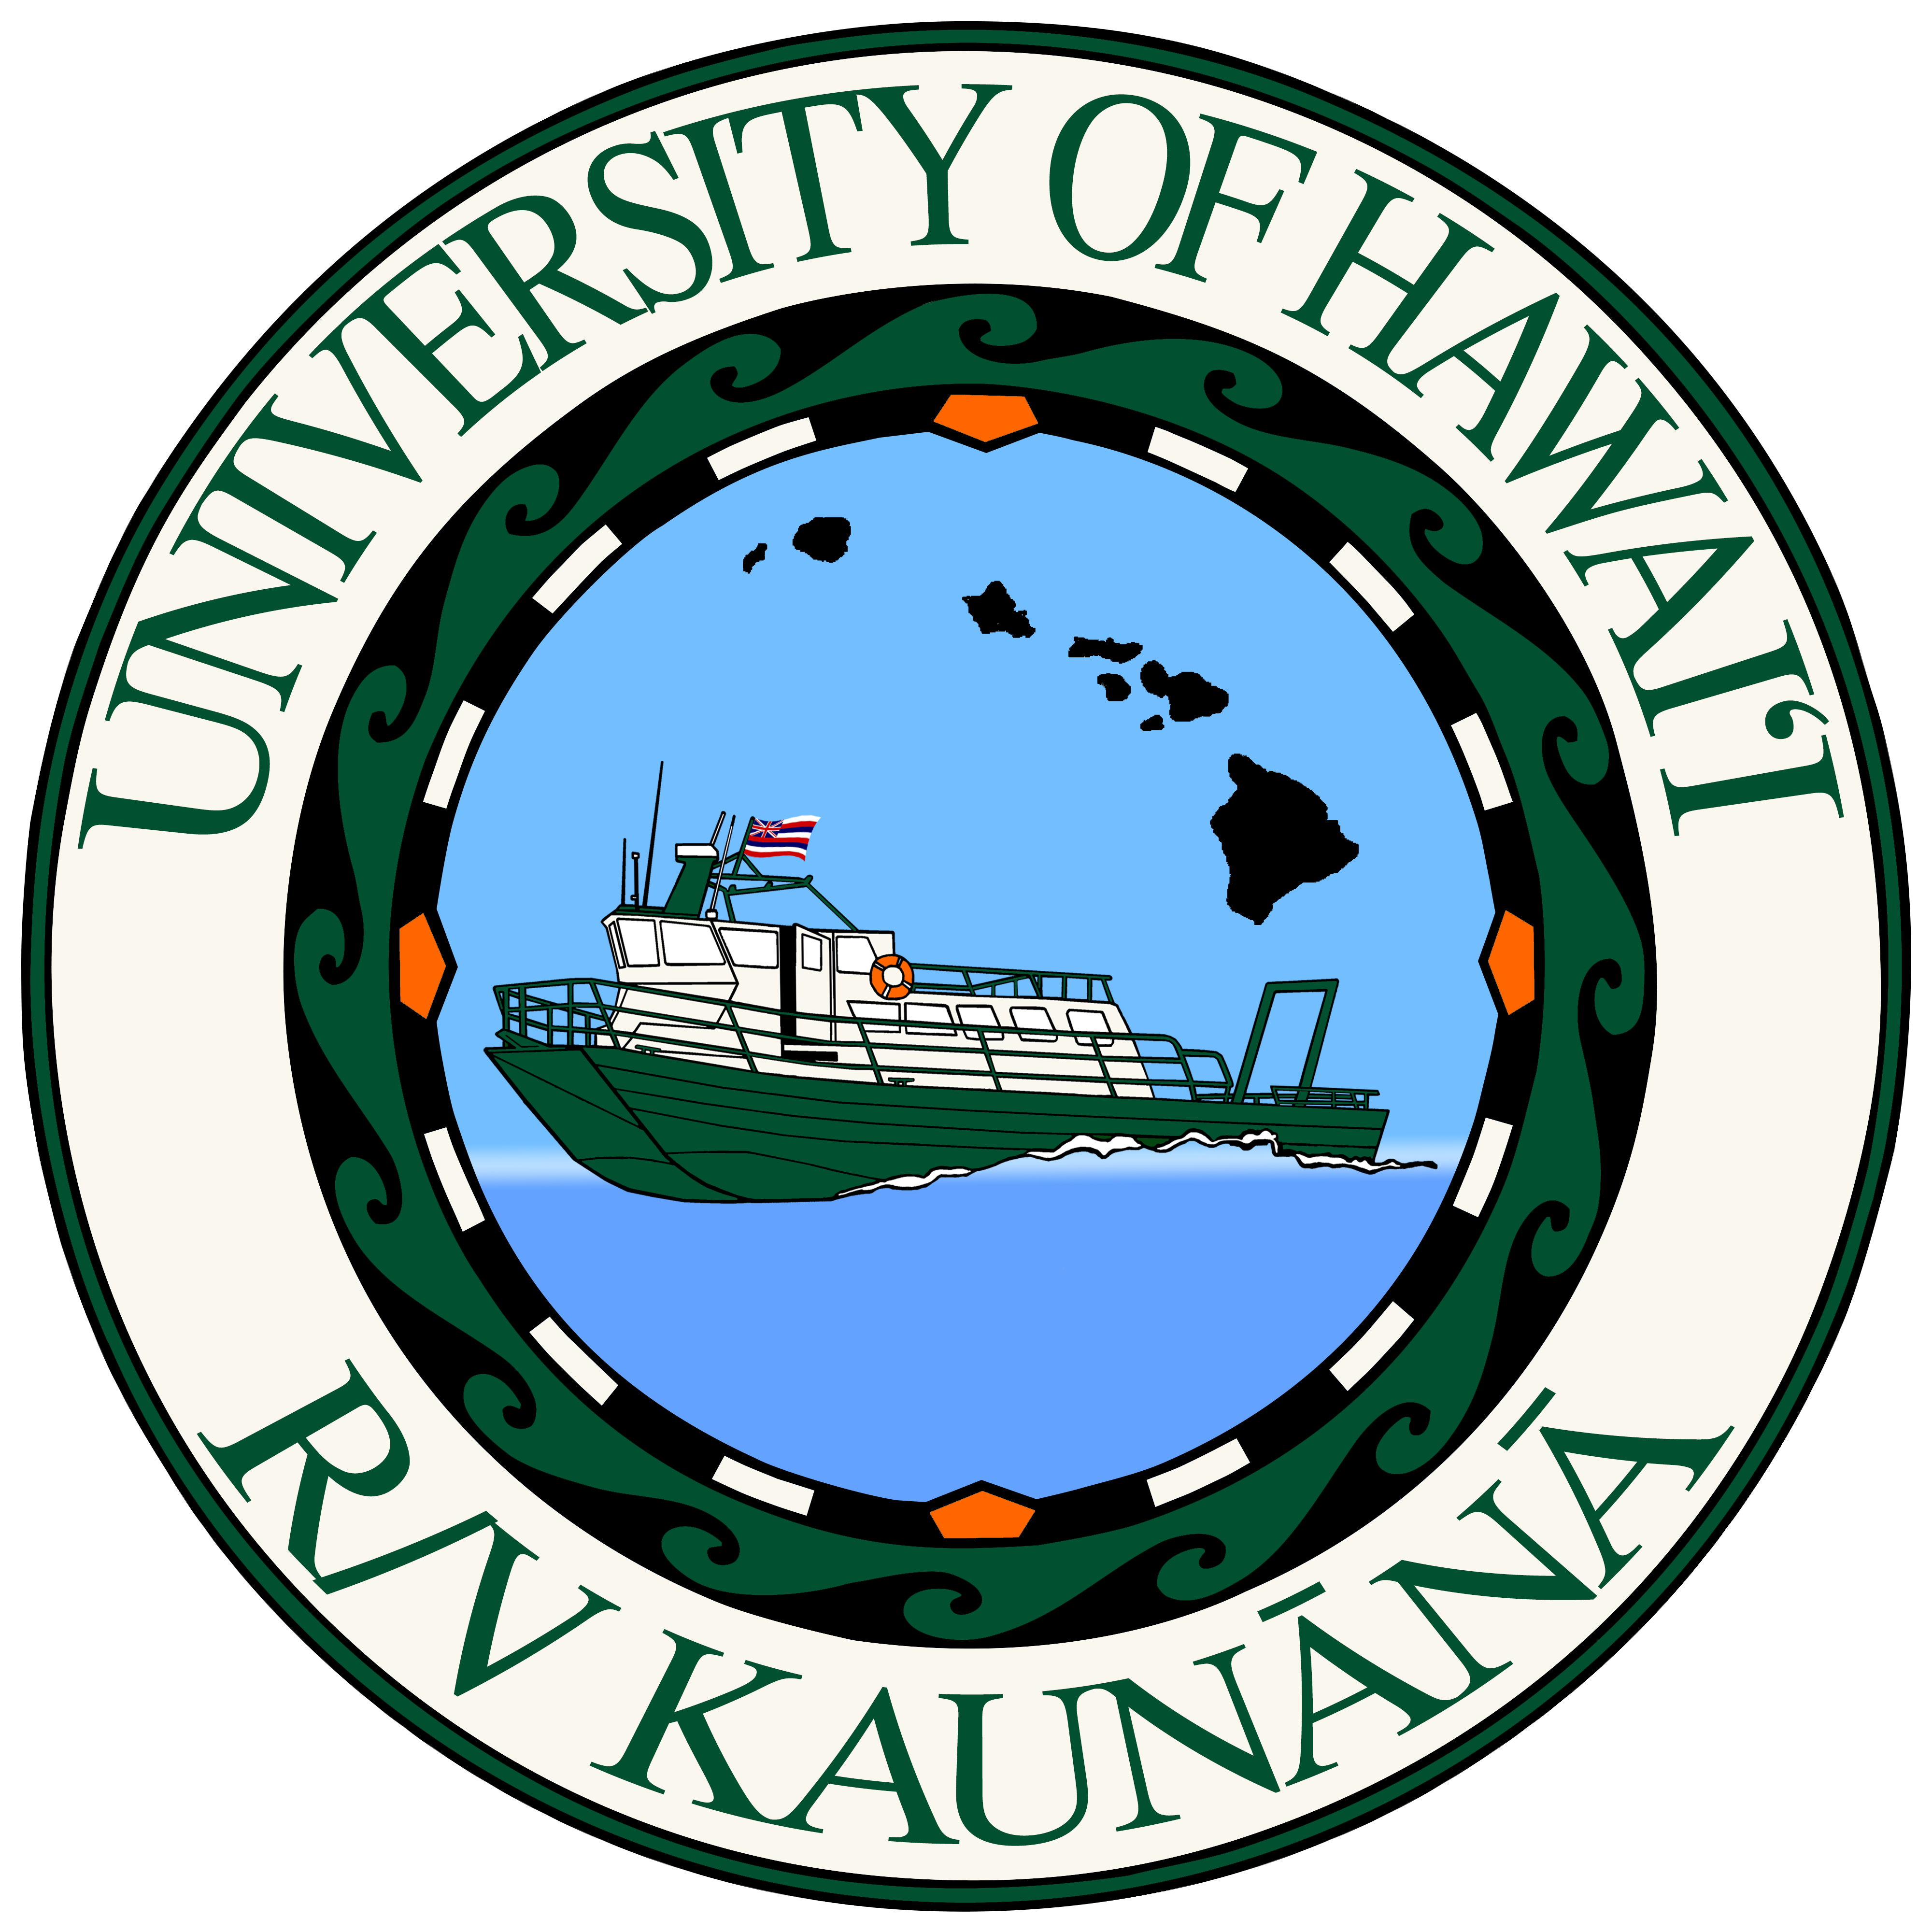 R/V Kaunana logo